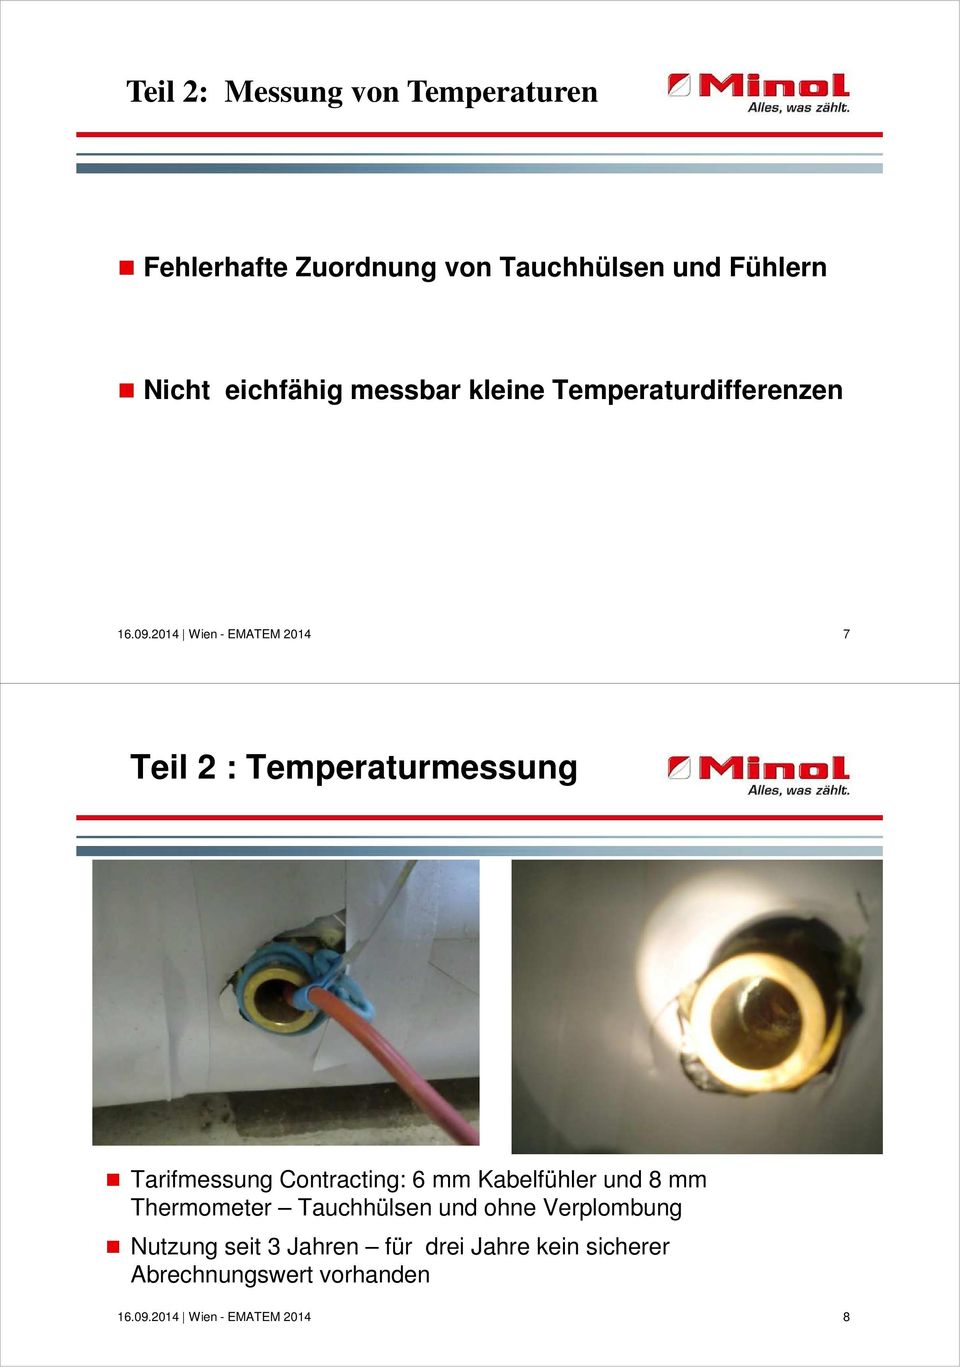 Tarifmessung Contracting: 6 mm Kabelfühler und 8 mm Thermometer Tauchhülsen und ohne